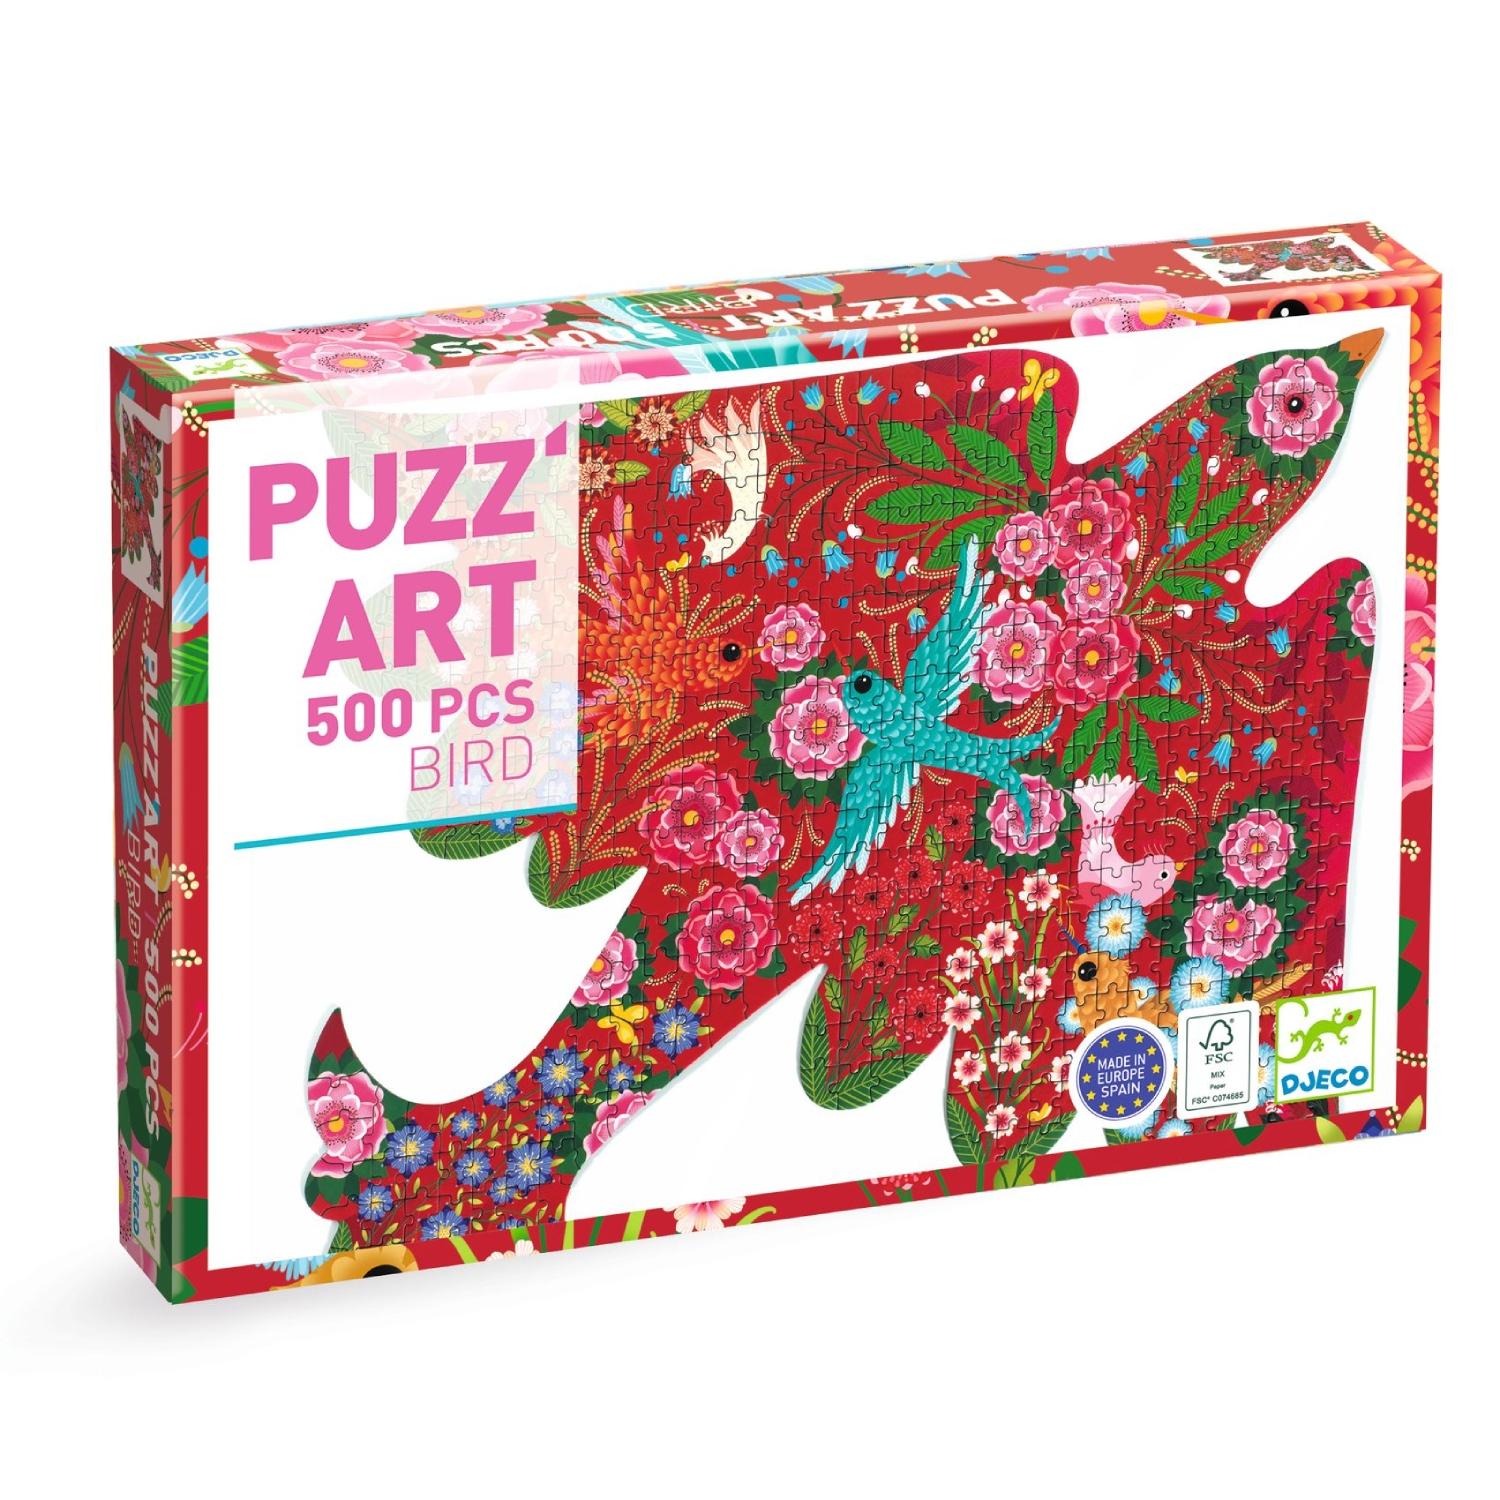 puzz'art bird 500 pieces by Djeco